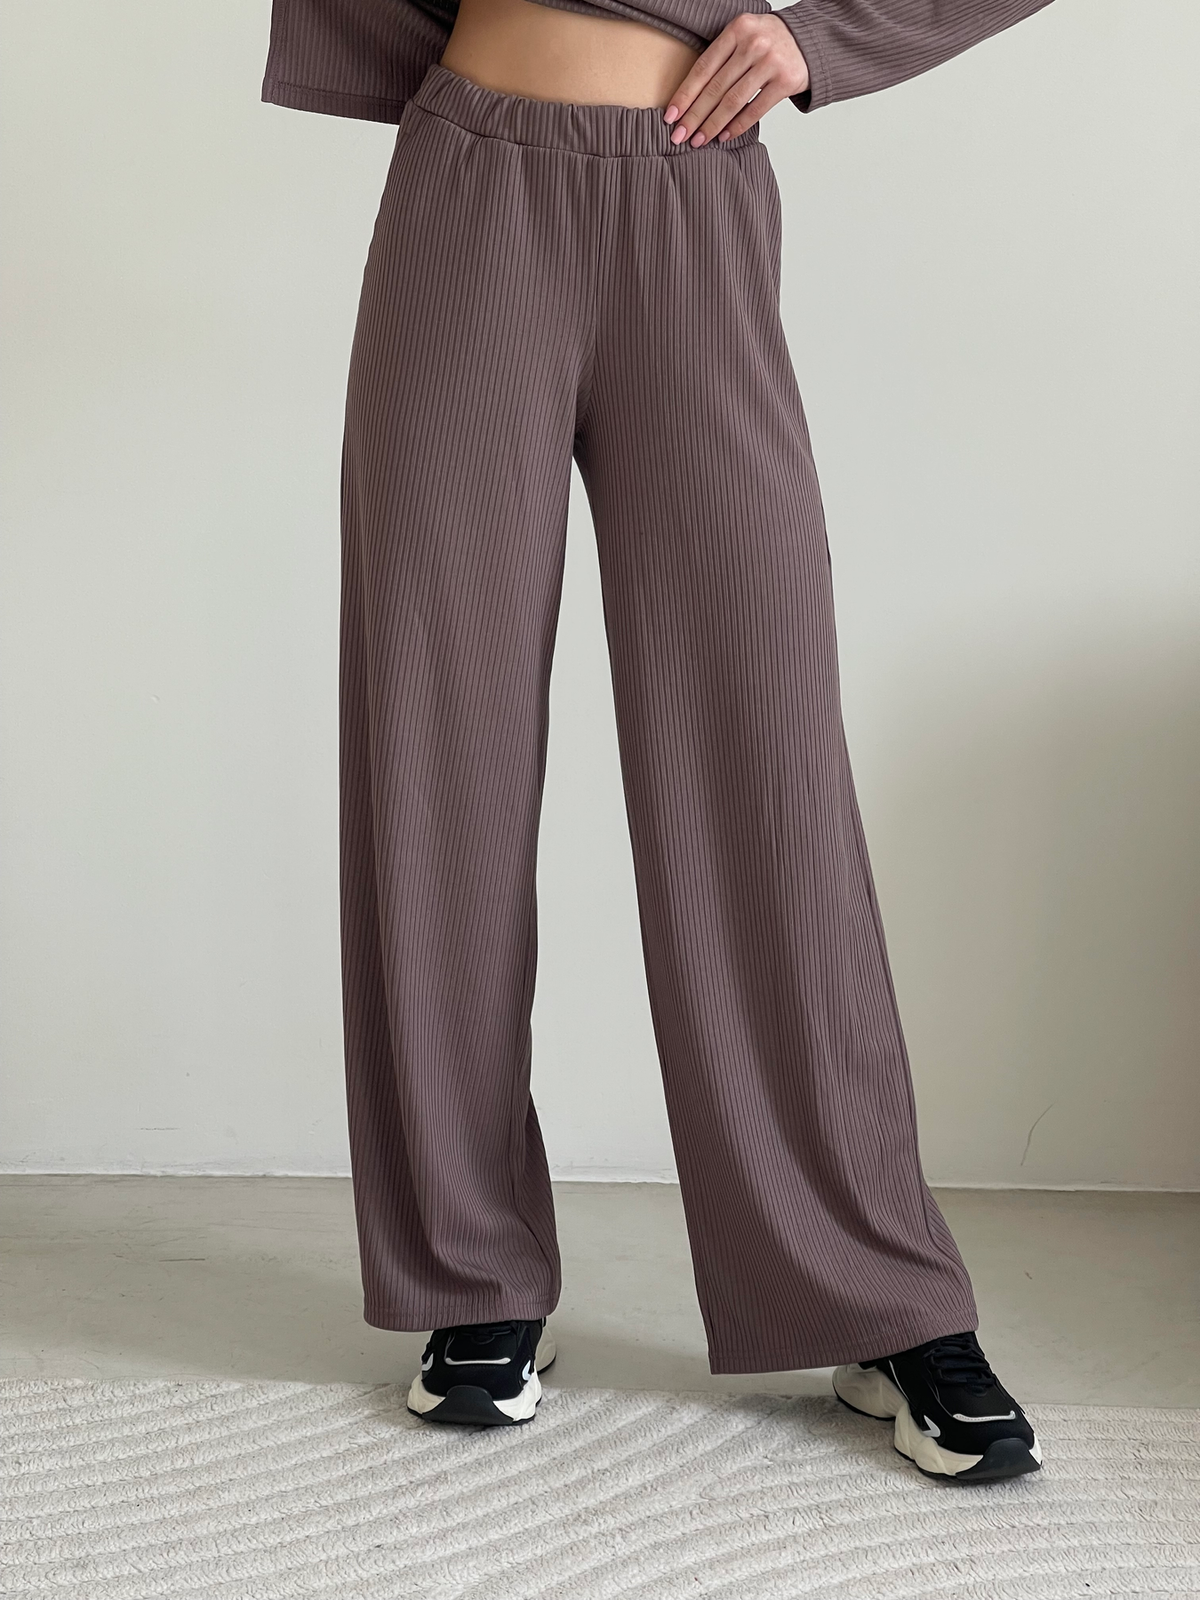 Купить Костюм с широкими брюками в рубчик цвет мокко Merlini Менто 100001164, размер 42-44 (S-M) в интернет-магазине